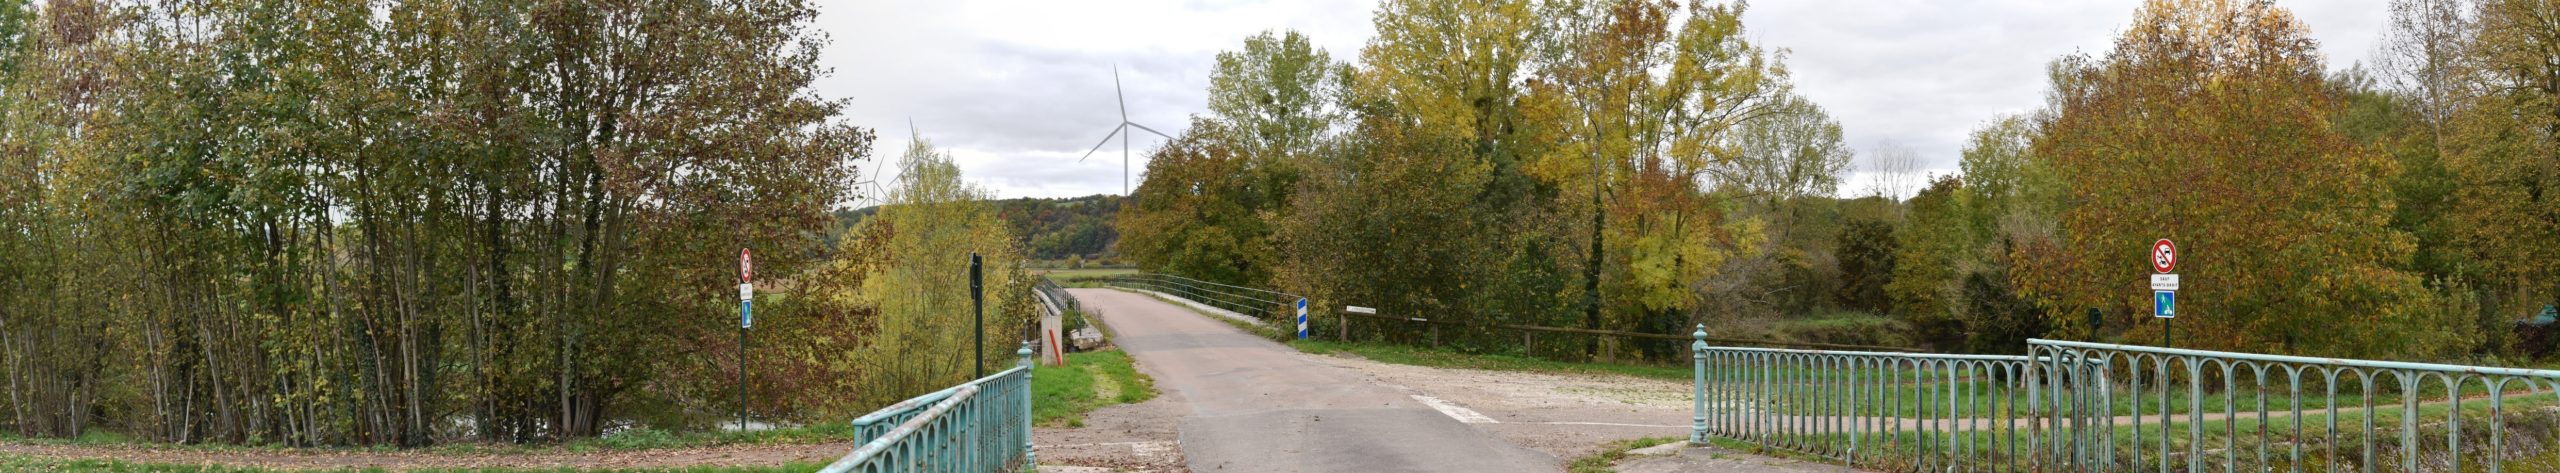 Canal de Bourgogne à Tronchoy (photomontage à 1,66 km de l'éolienne la plus proche)